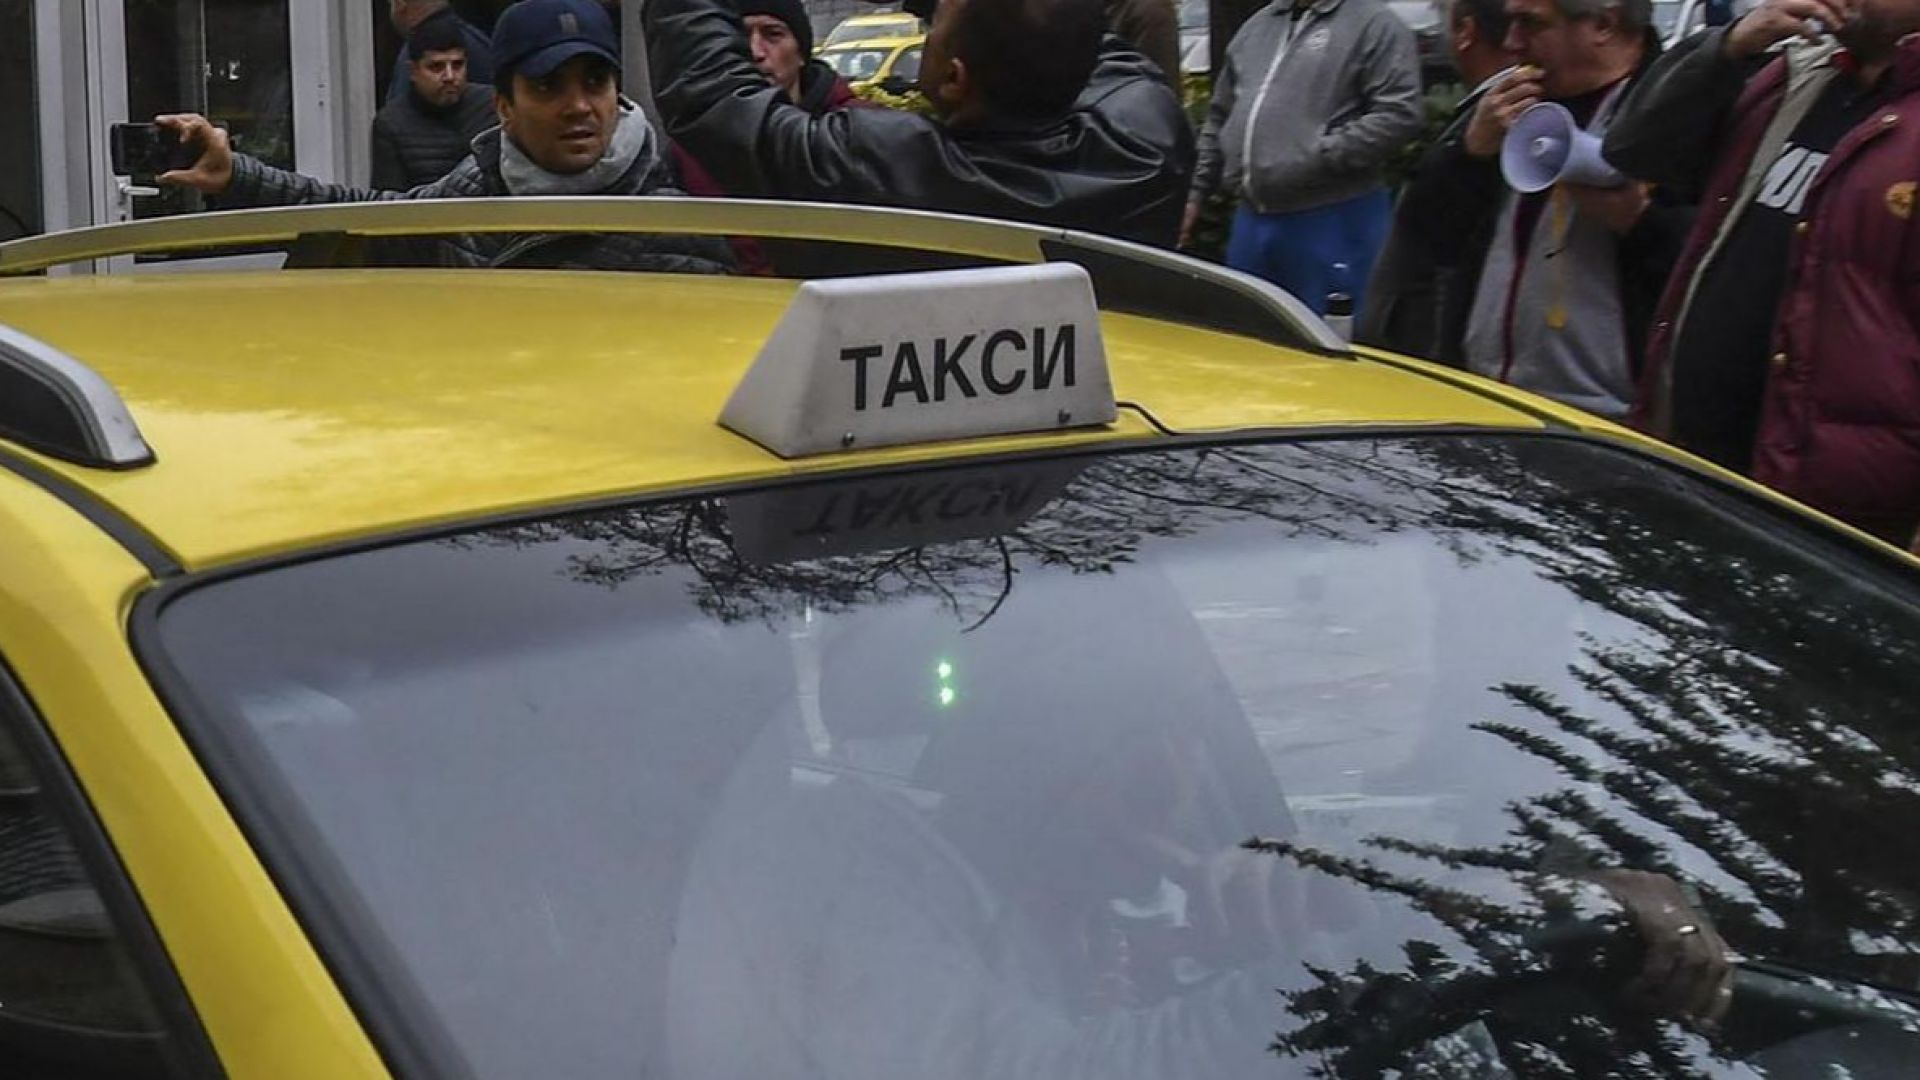 Мащабна акция в Пловдив Данъчни и икономическа полиция проверяват таксиметровите